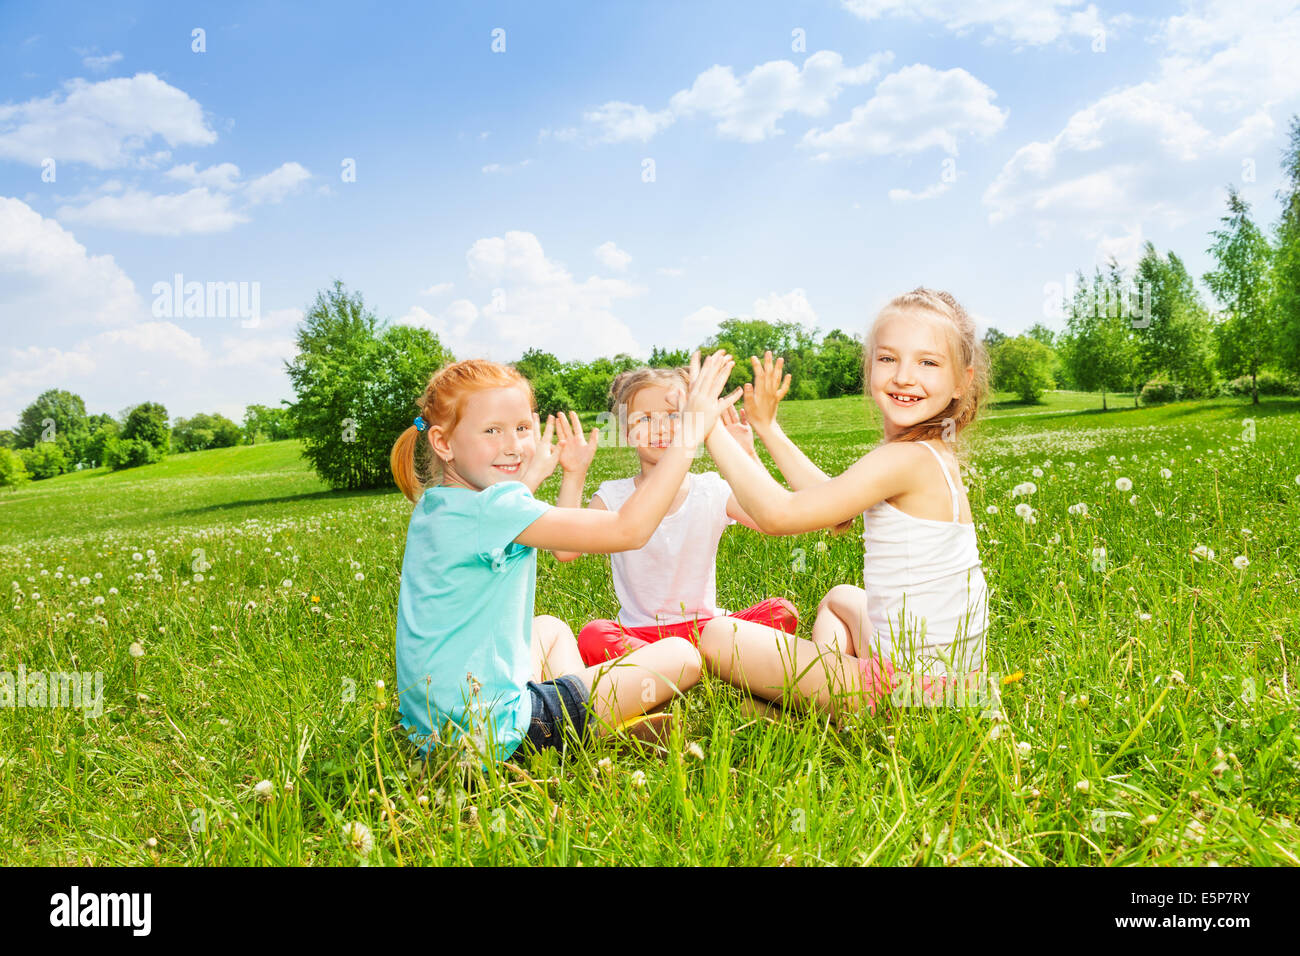 Trois enfants jouant sur une herbe Banque D'Images